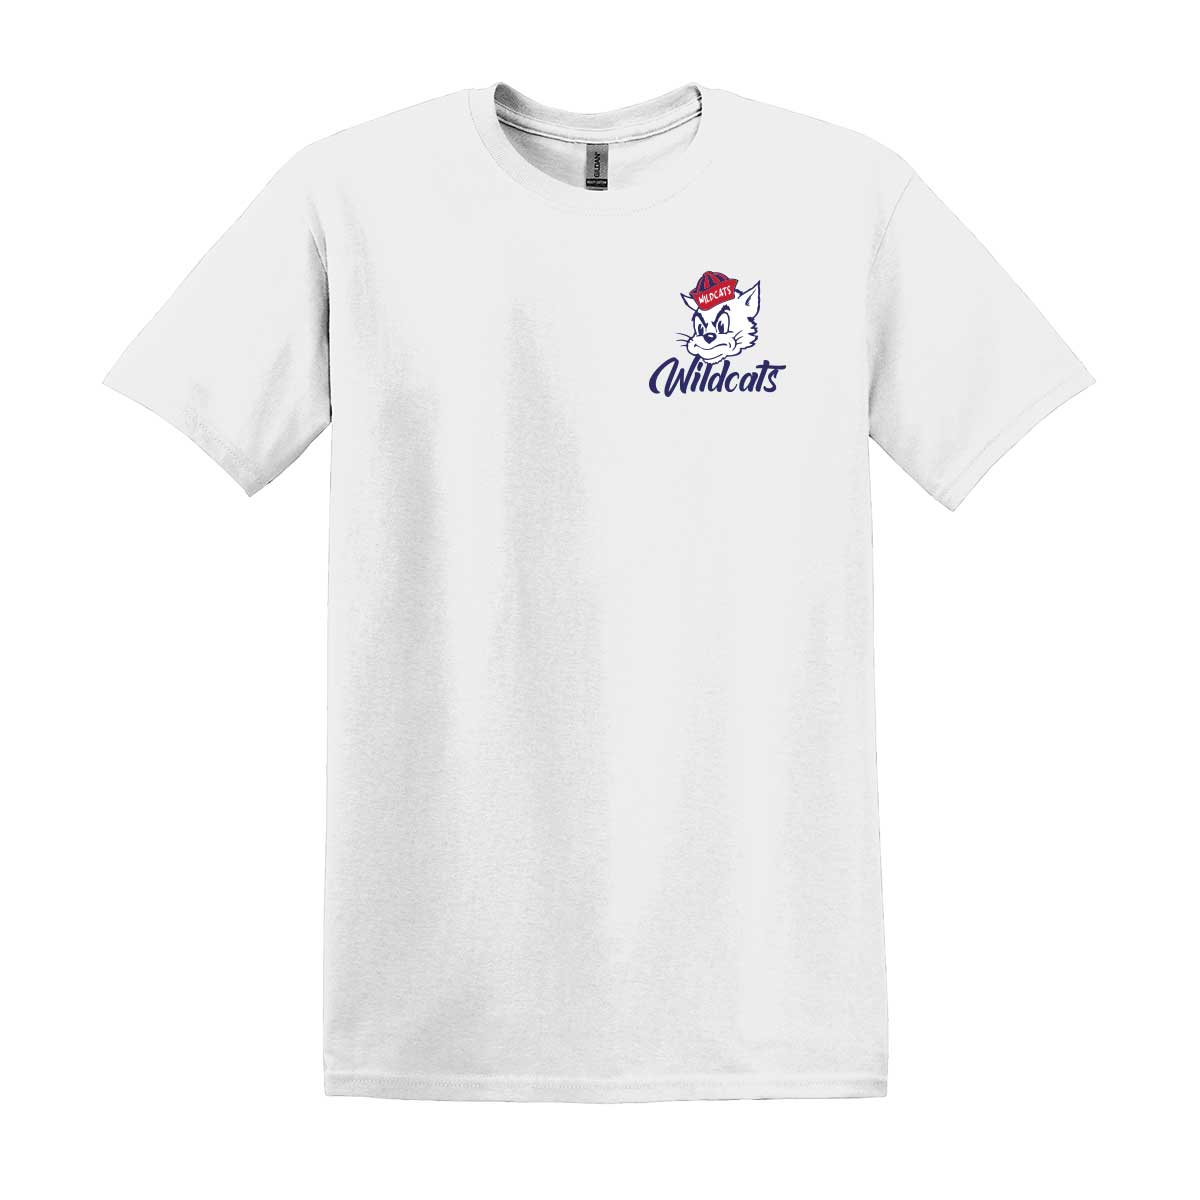 Deming Wildcats Cotton T-Shirt